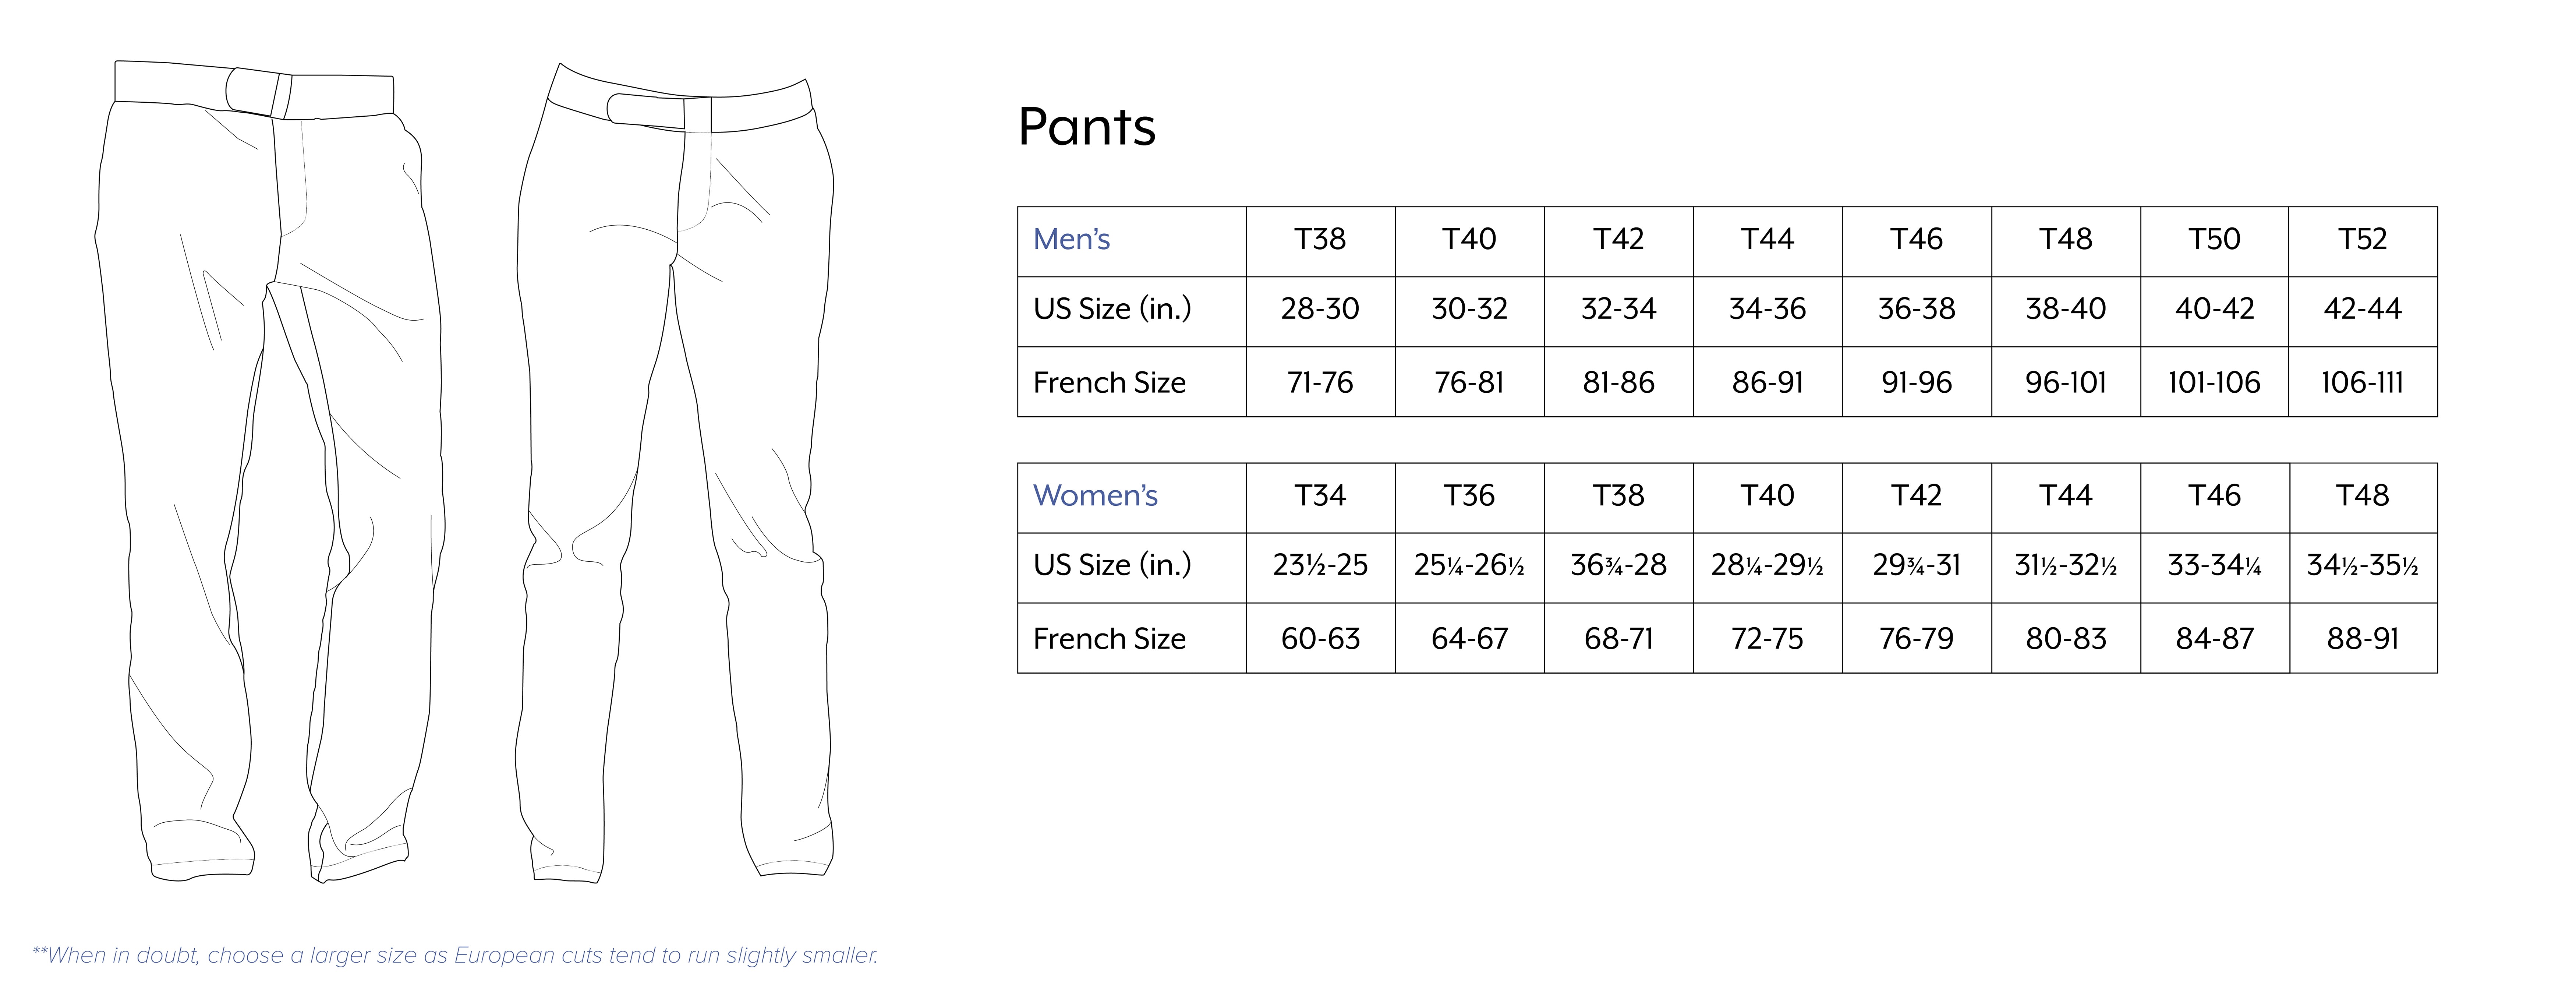 Ralph Pants Size Chart